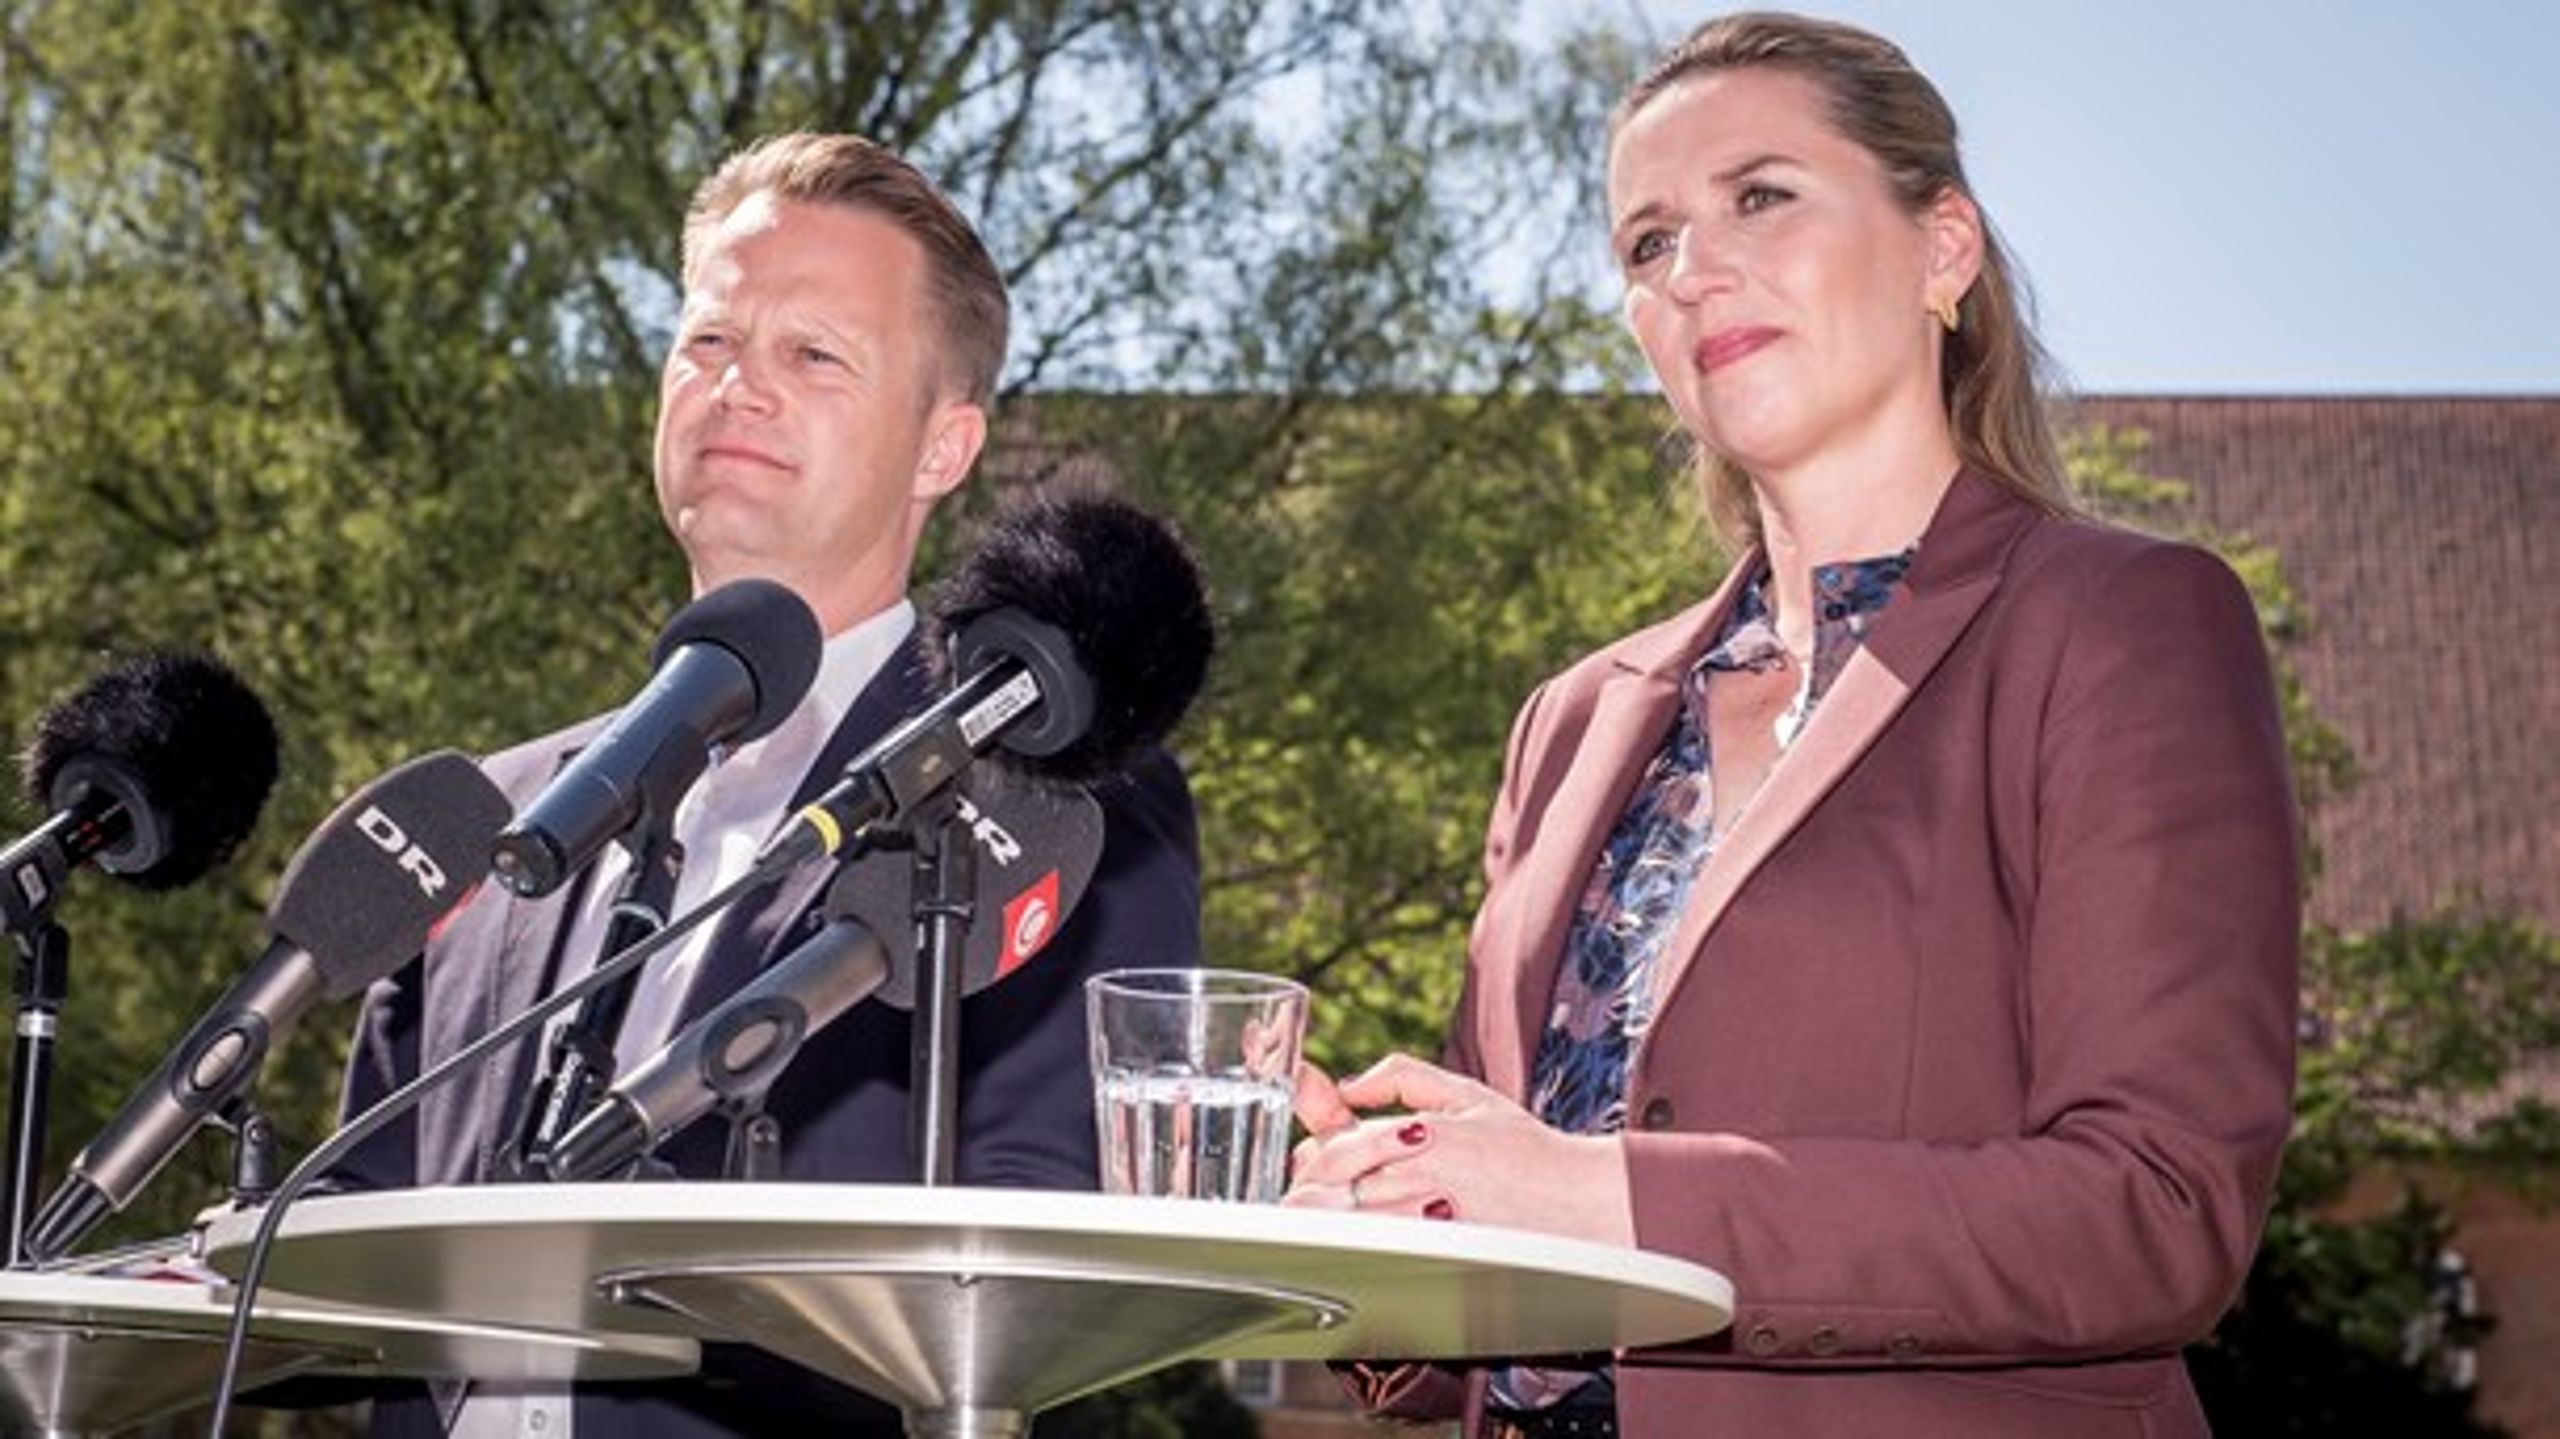 Mette Frederiksen har netop præsenteret sit nye hold af S-ministre, hvor blandt andre Jeppe Kofod er at finde. Han bliver hentet hjem fra Europa-Parlamentet som ny udenrigsminister.